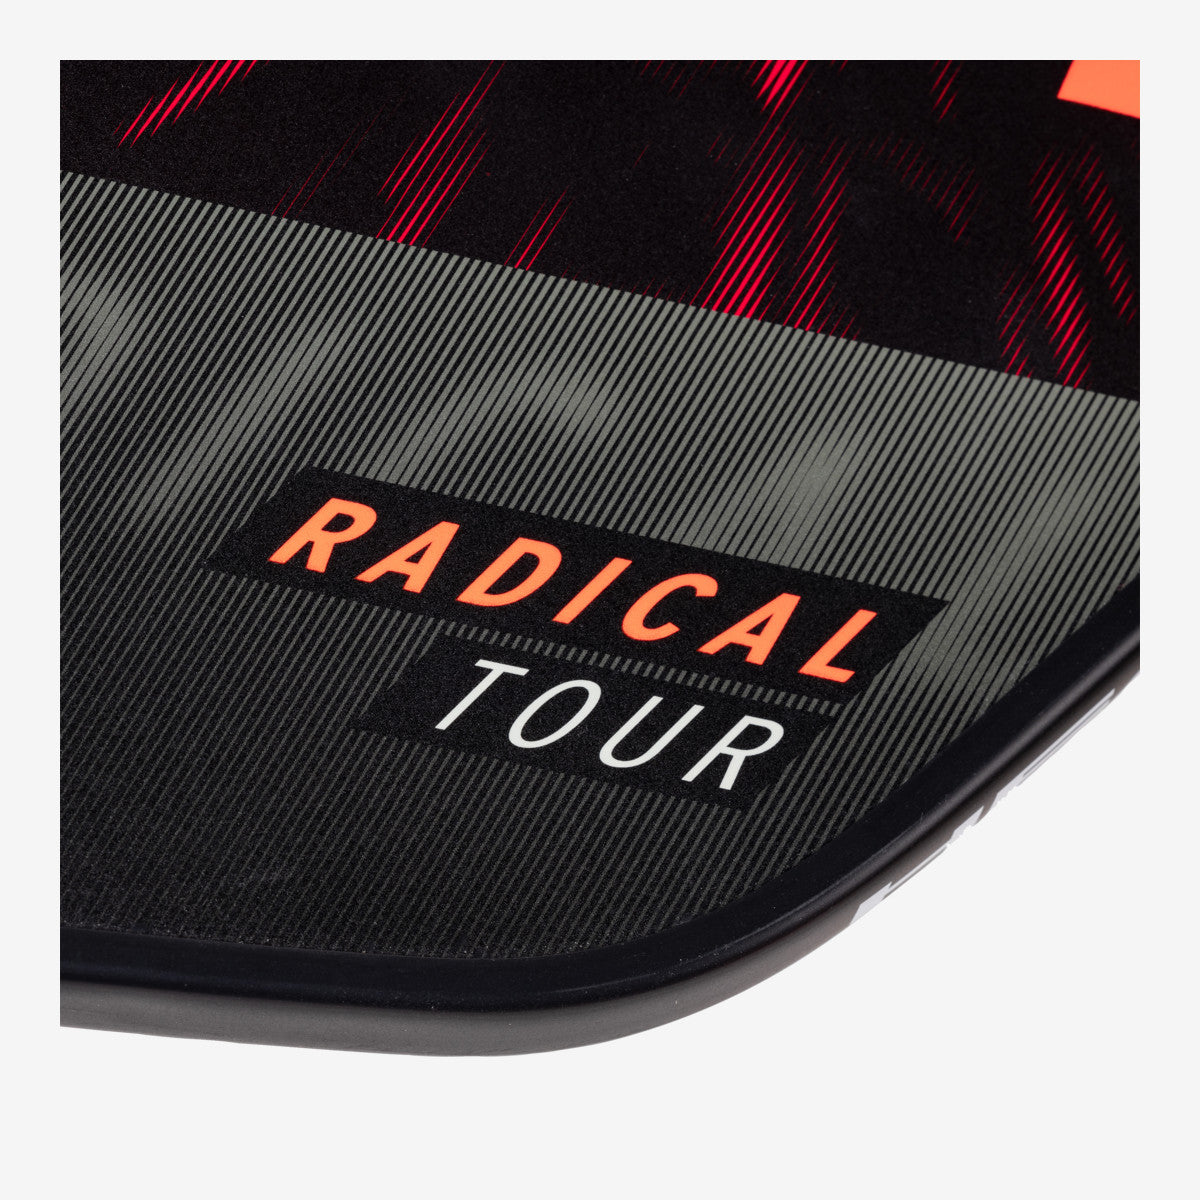 Head Radical Tour